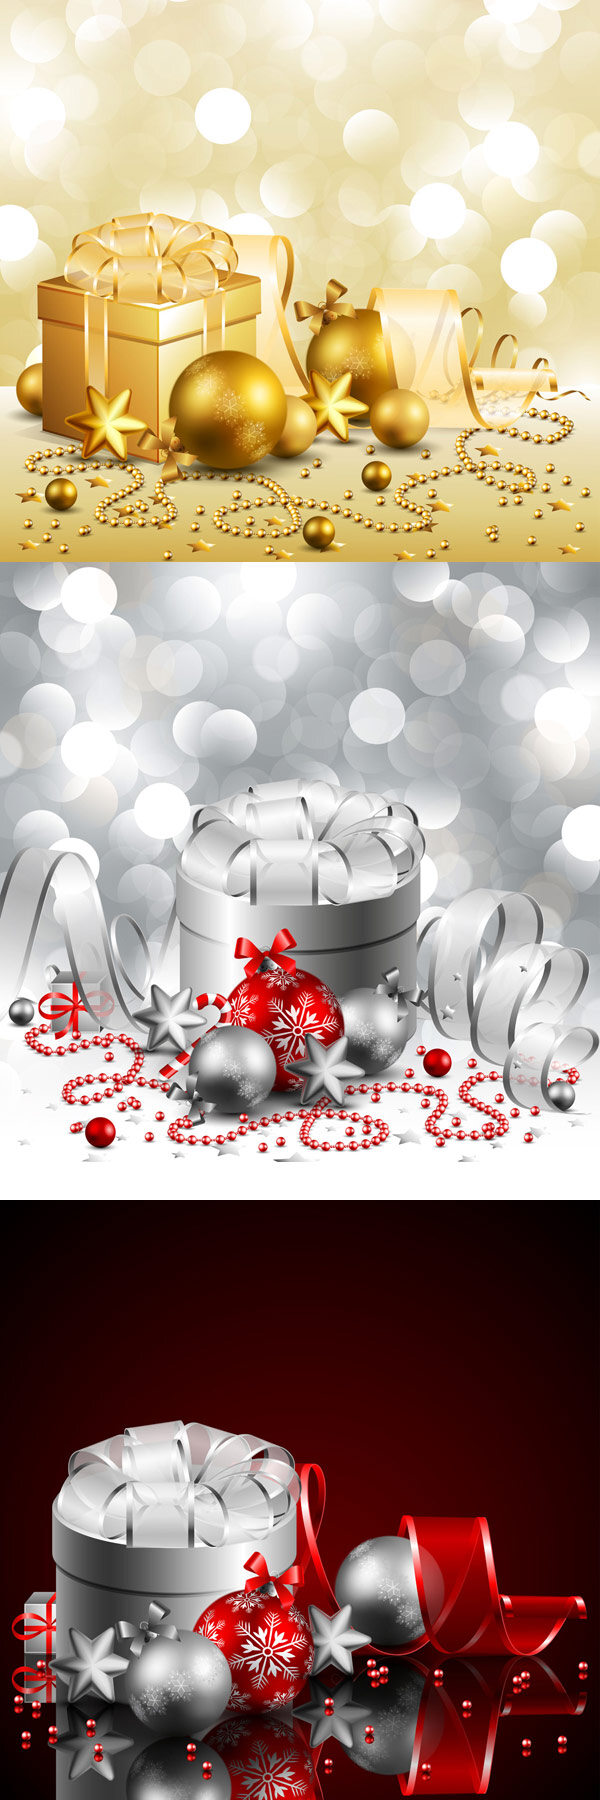 圣诞节 礼盒 彩球 矢量 丝带 珠子 红果 梦幻 白色